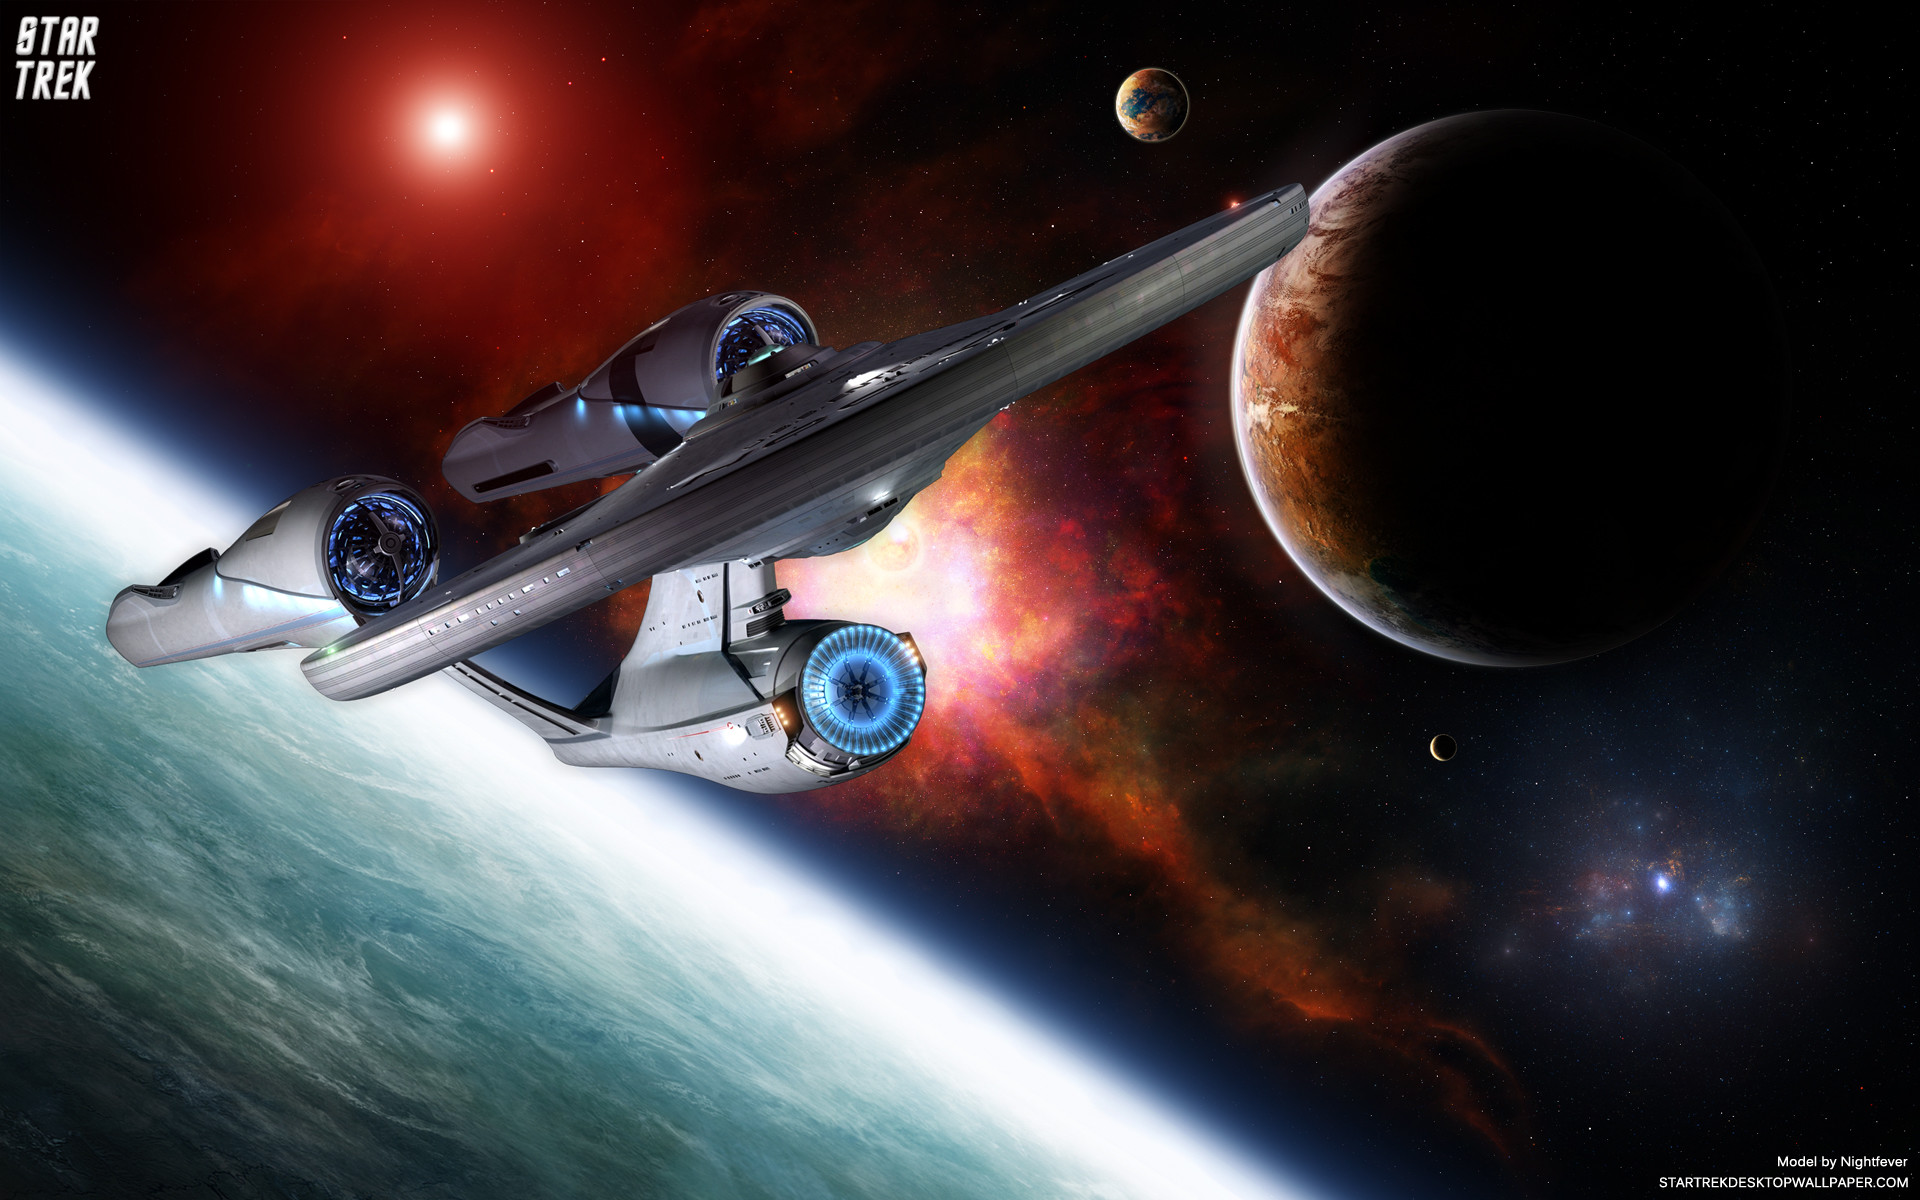 Star Trek Uss Enterprise wallpaper – 420108